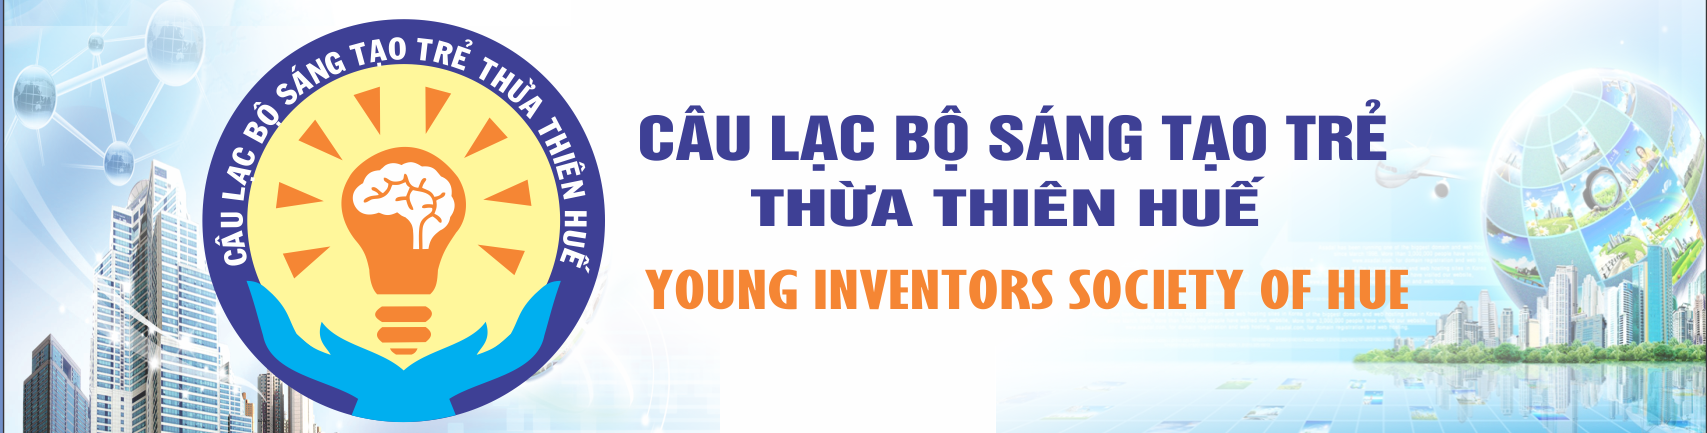 Câu lạc bộ Sáng tạo trẻ Thừa Thiên Huế